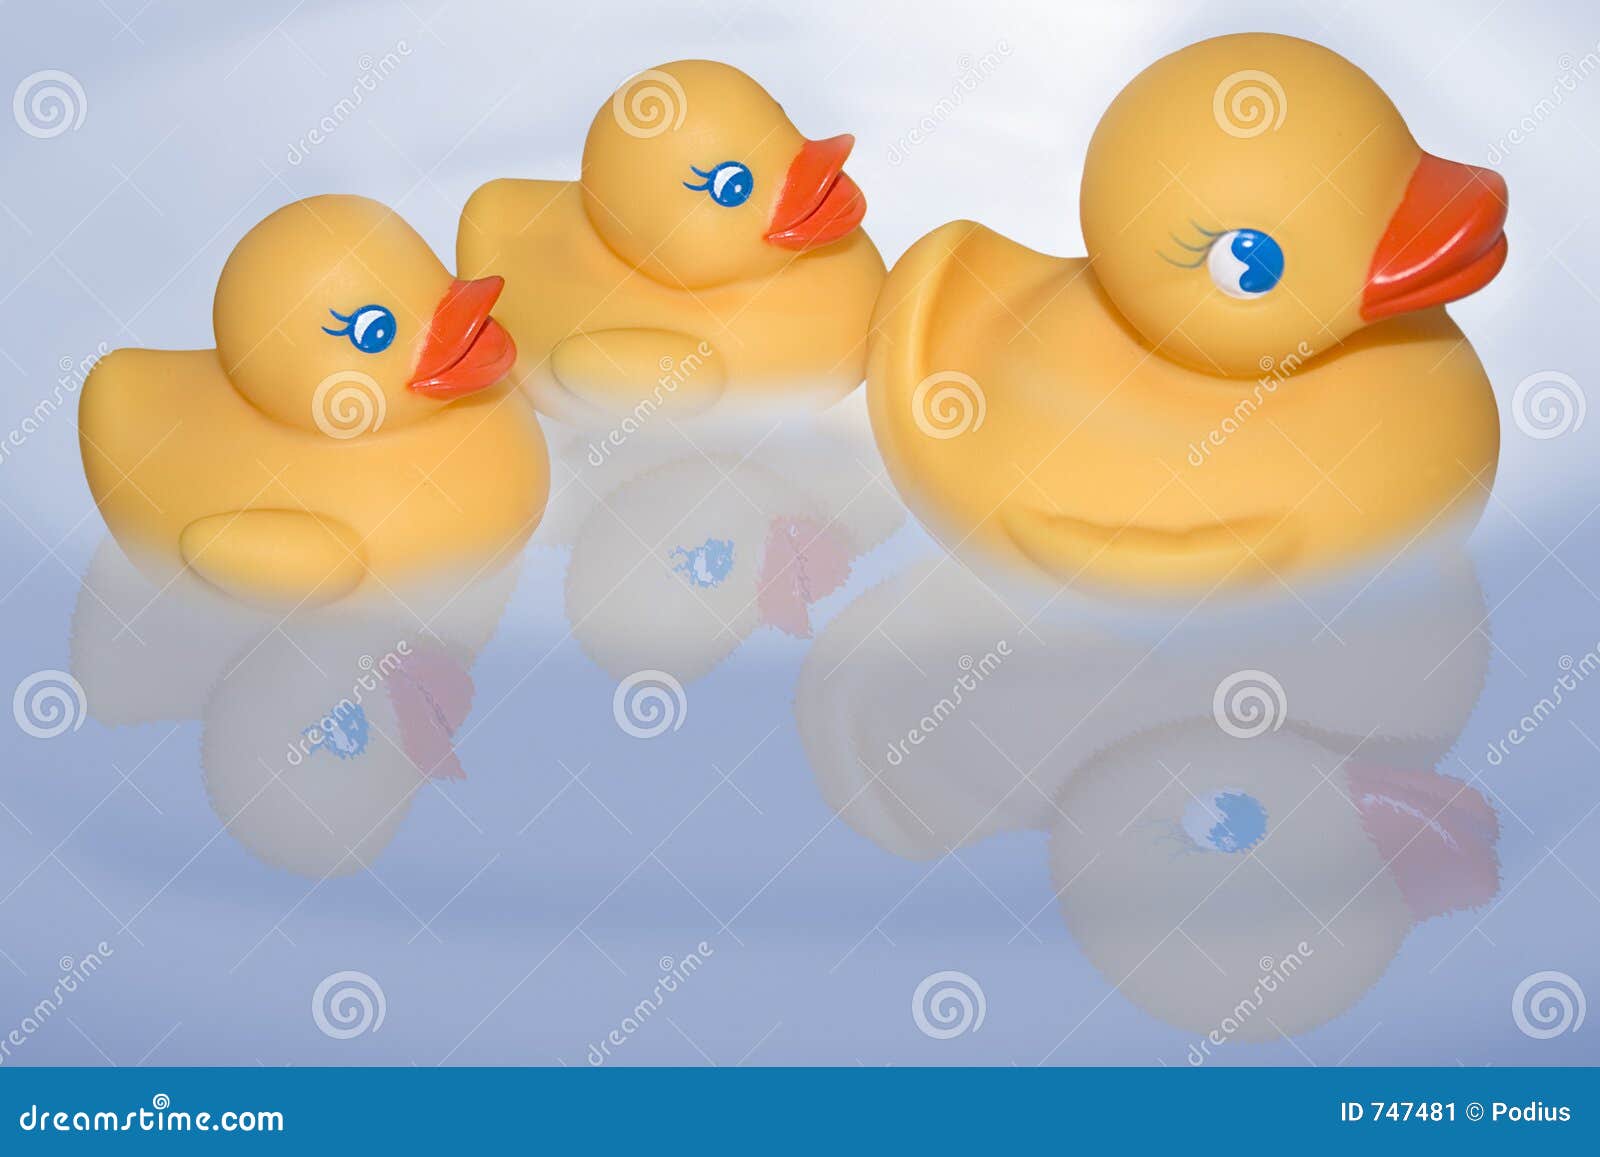 floating duckies